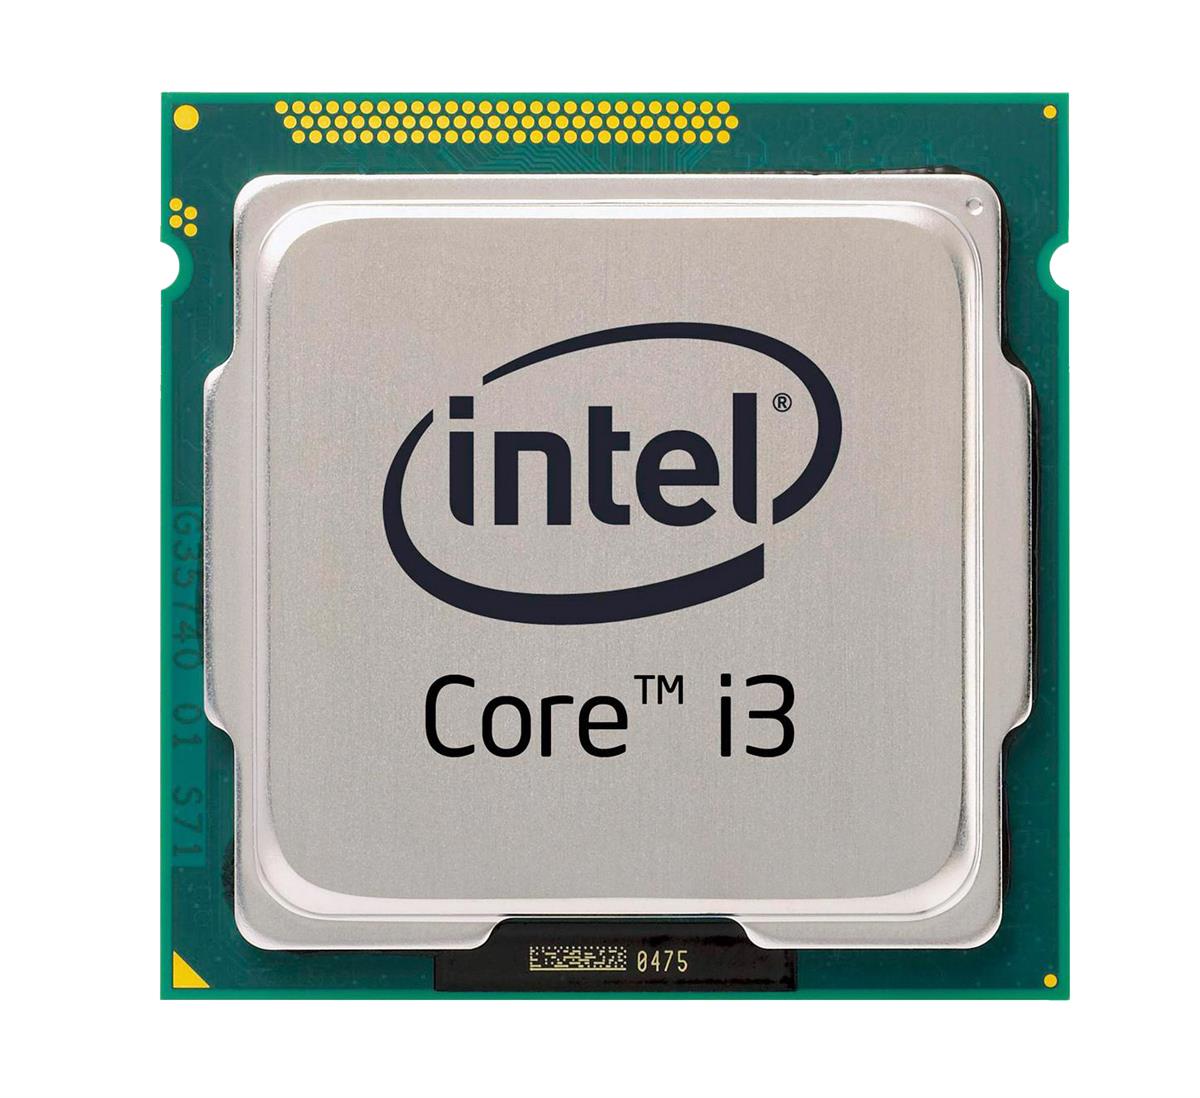 i3-5015U Intel Core i3 Dual Core 2.10GHz 5.00GT/s DMI2 3MB L3 Cache Mobile Processor